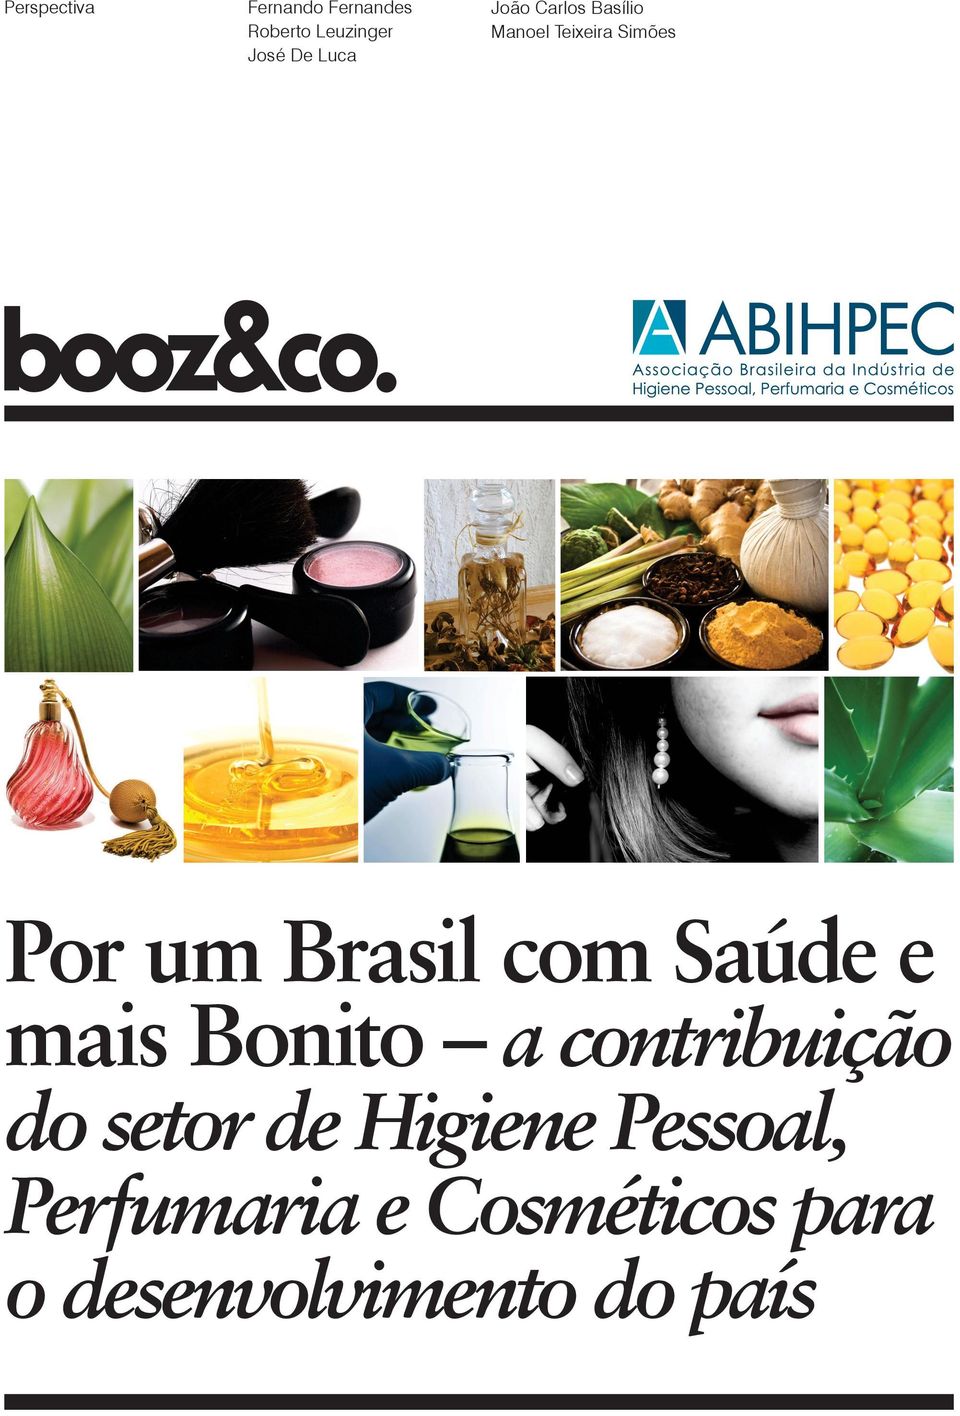 Brasil com Saúde e mais Bonito a contribuição do setor de